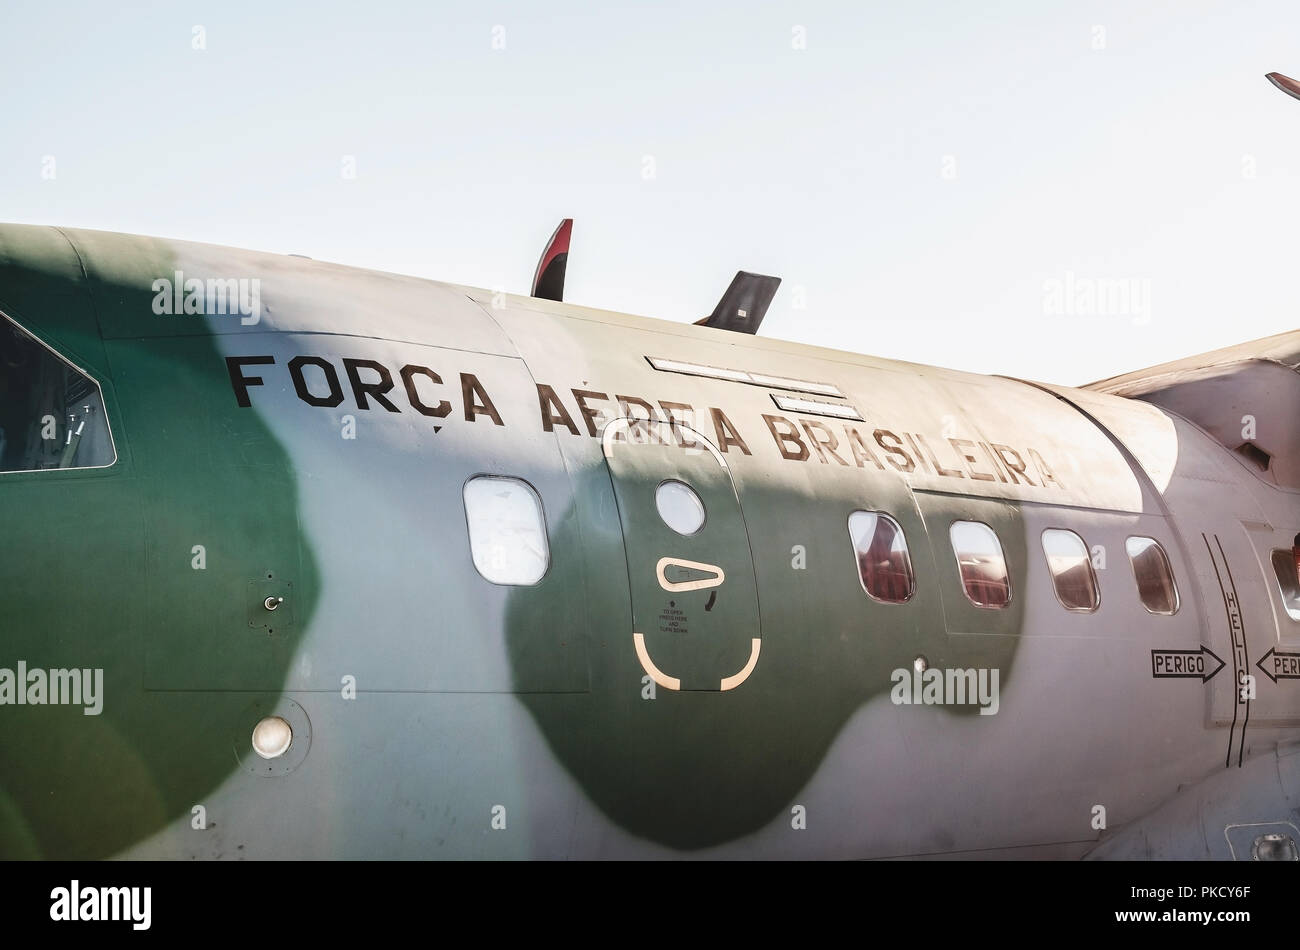 Campo Grande, Brasilien - September 09, 2018: Detail auf der Airbus Military Air Base der Portoes Abertos Ala 5 zu besuchen. Airbus: EADS CASA C-295 C Stockfoto